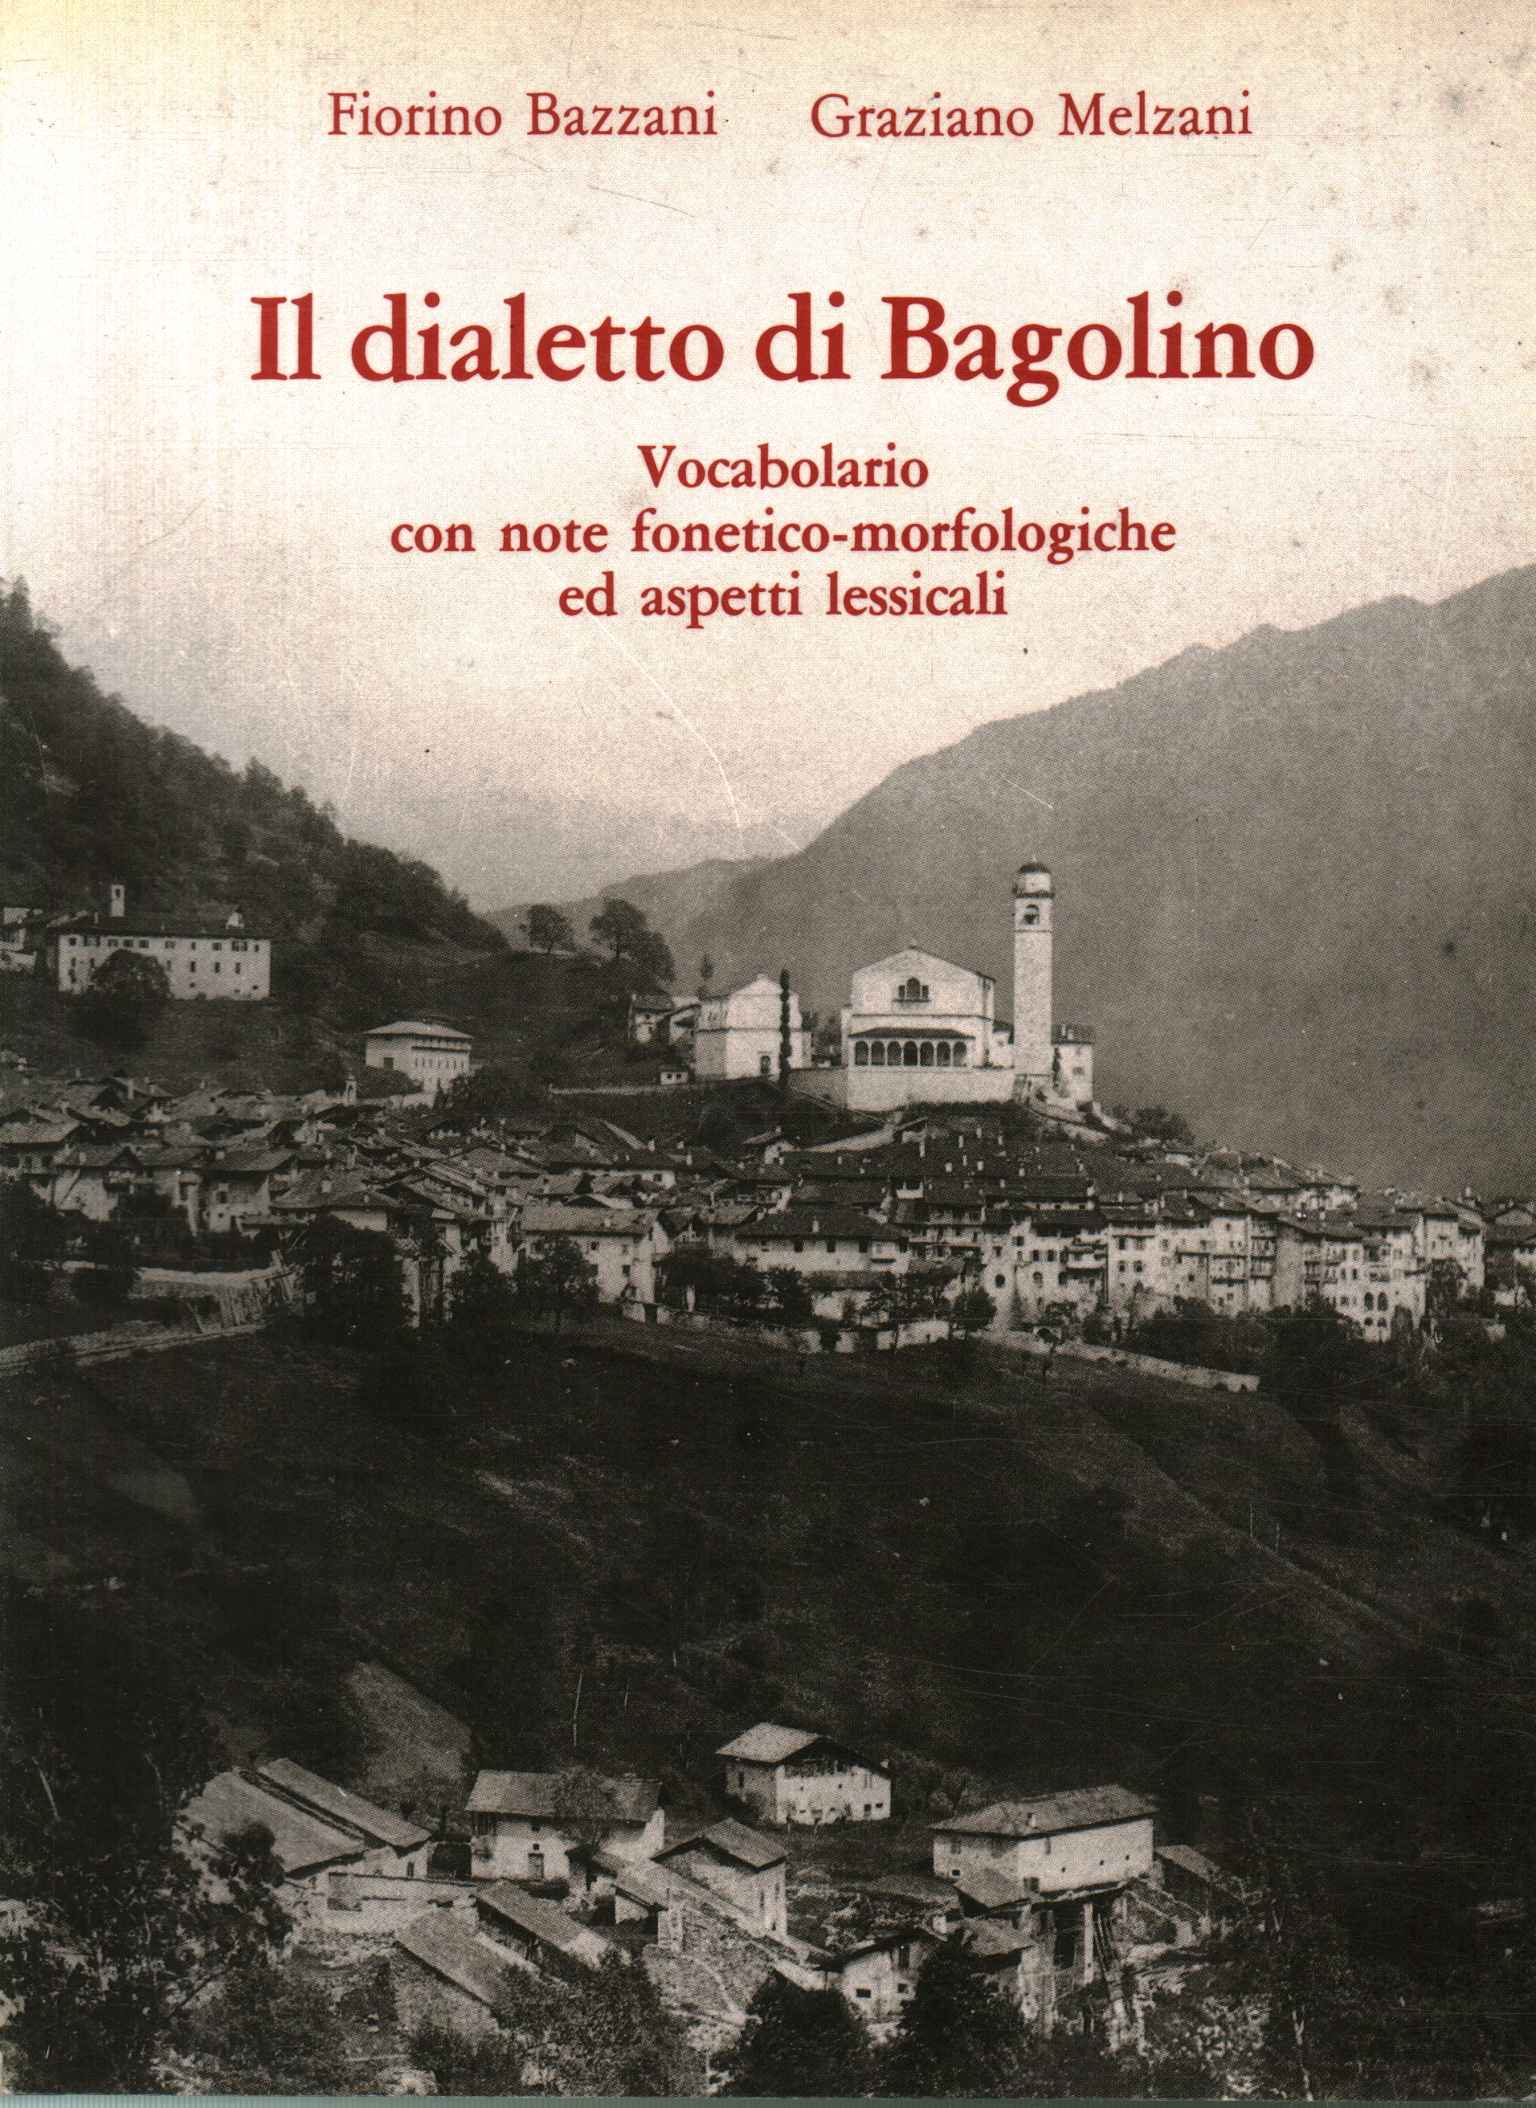 Der Bagolino-Dialekt